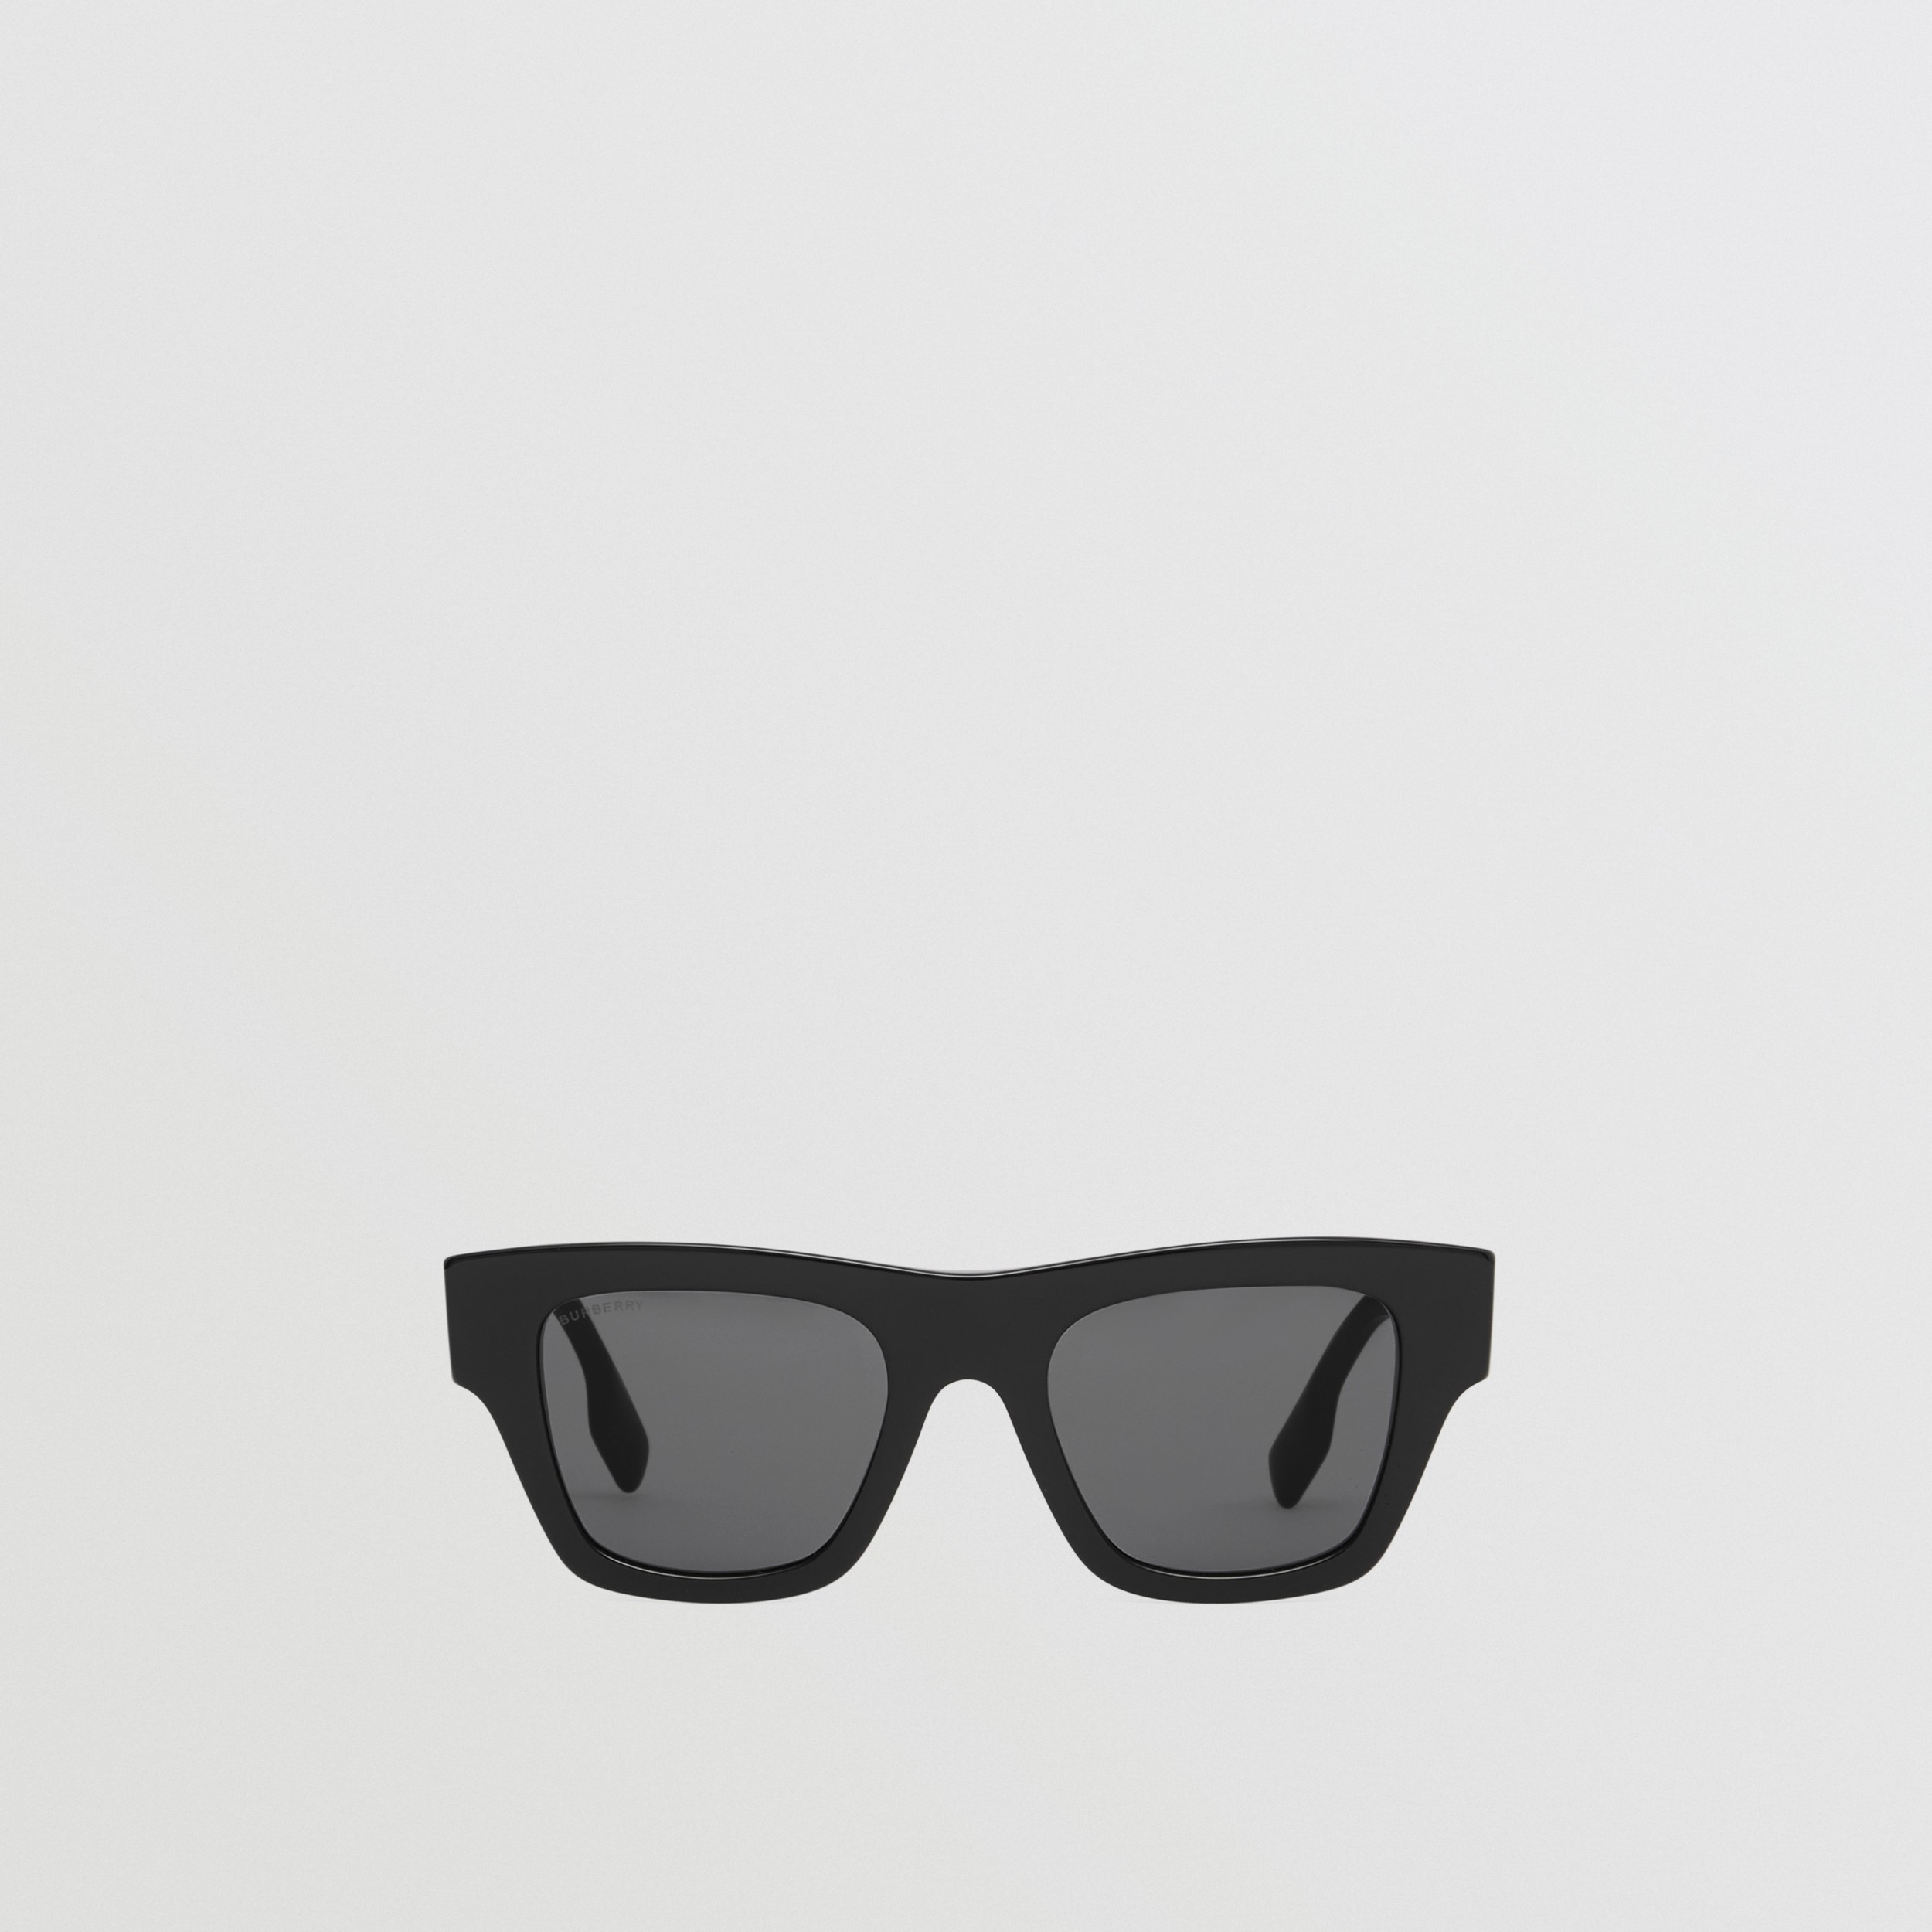 Total 68+ imagen burberry square acetate sunglasses